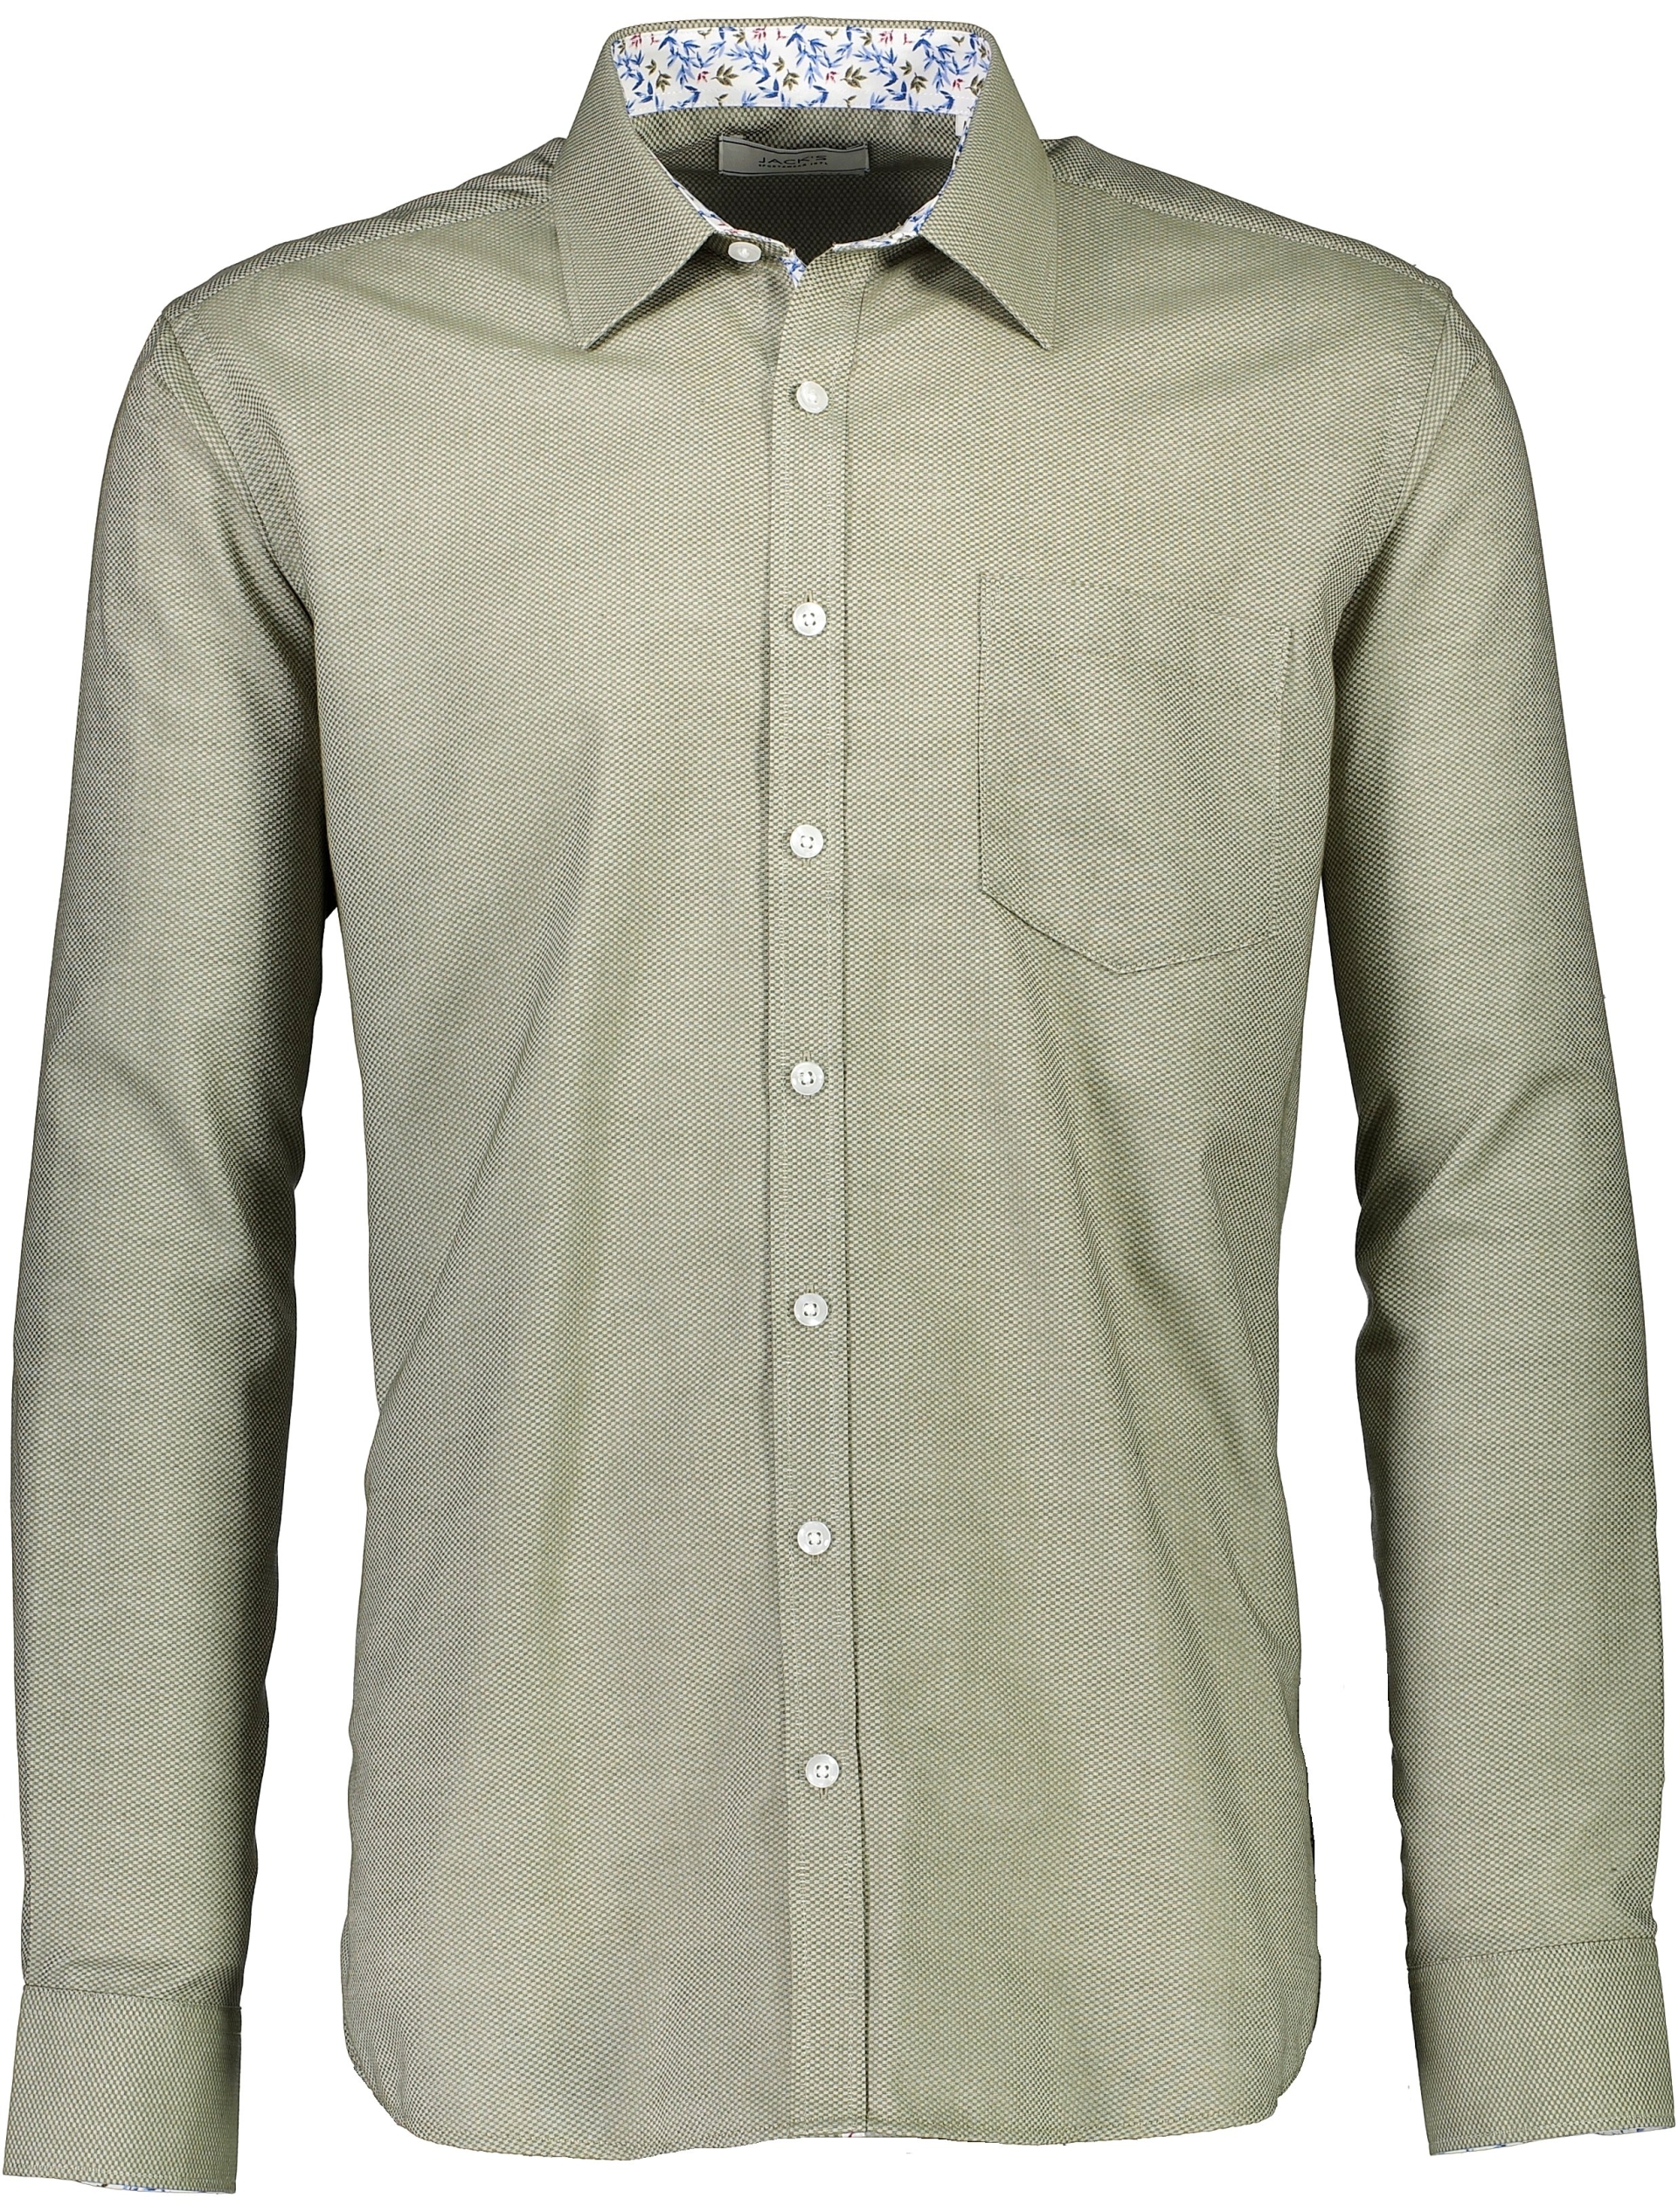 Jack's Casual skjorte grøn / lt army